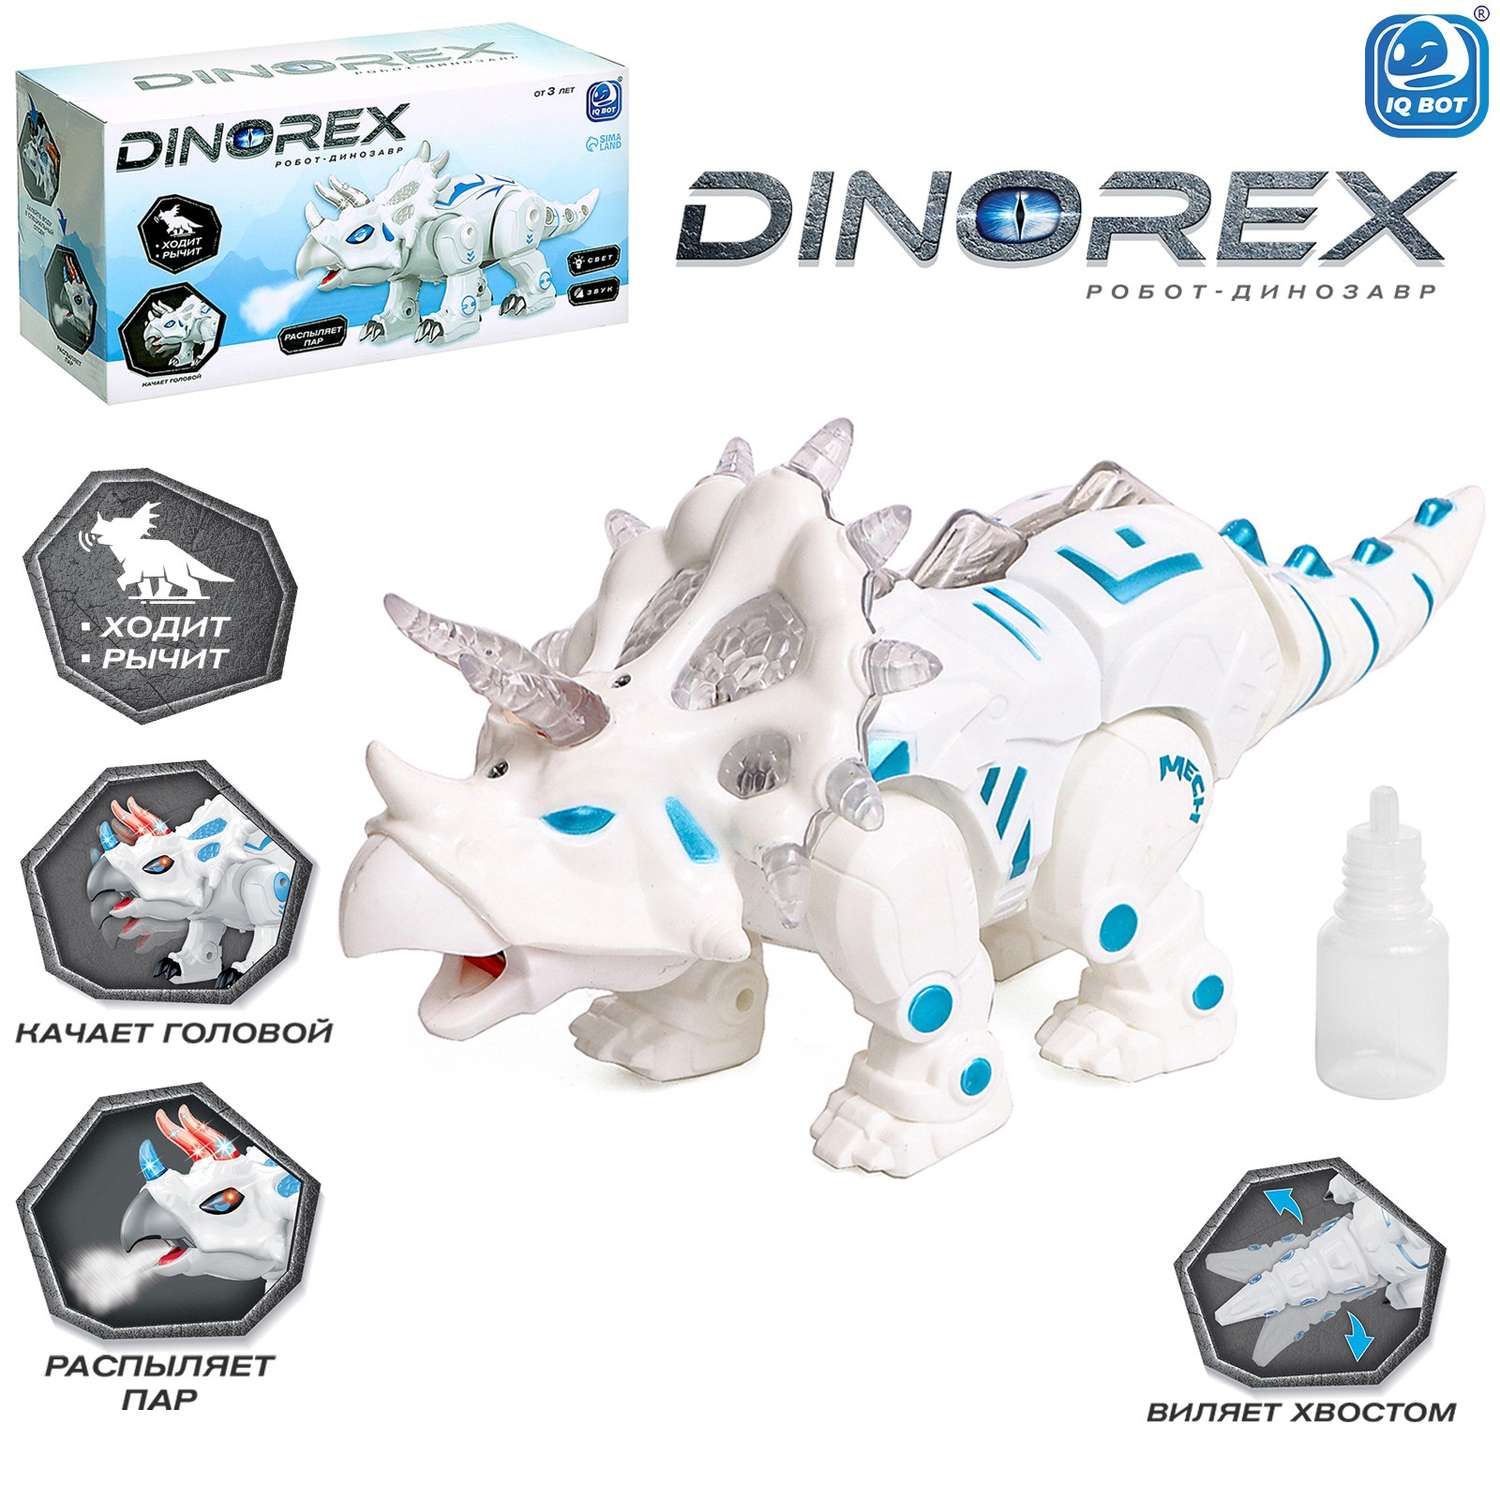 Робот IQ BOT динозавр Dinorex интерактивный - фото 1